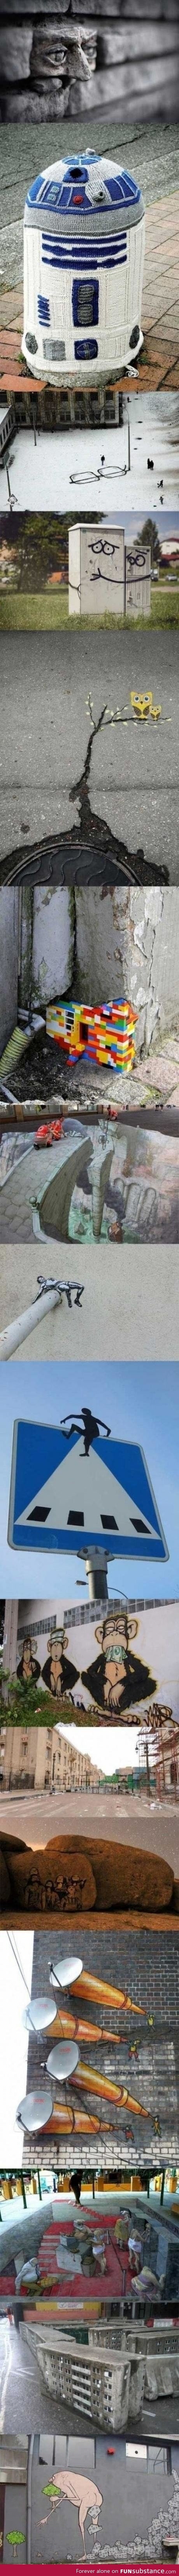 Awesome graffiti around the world